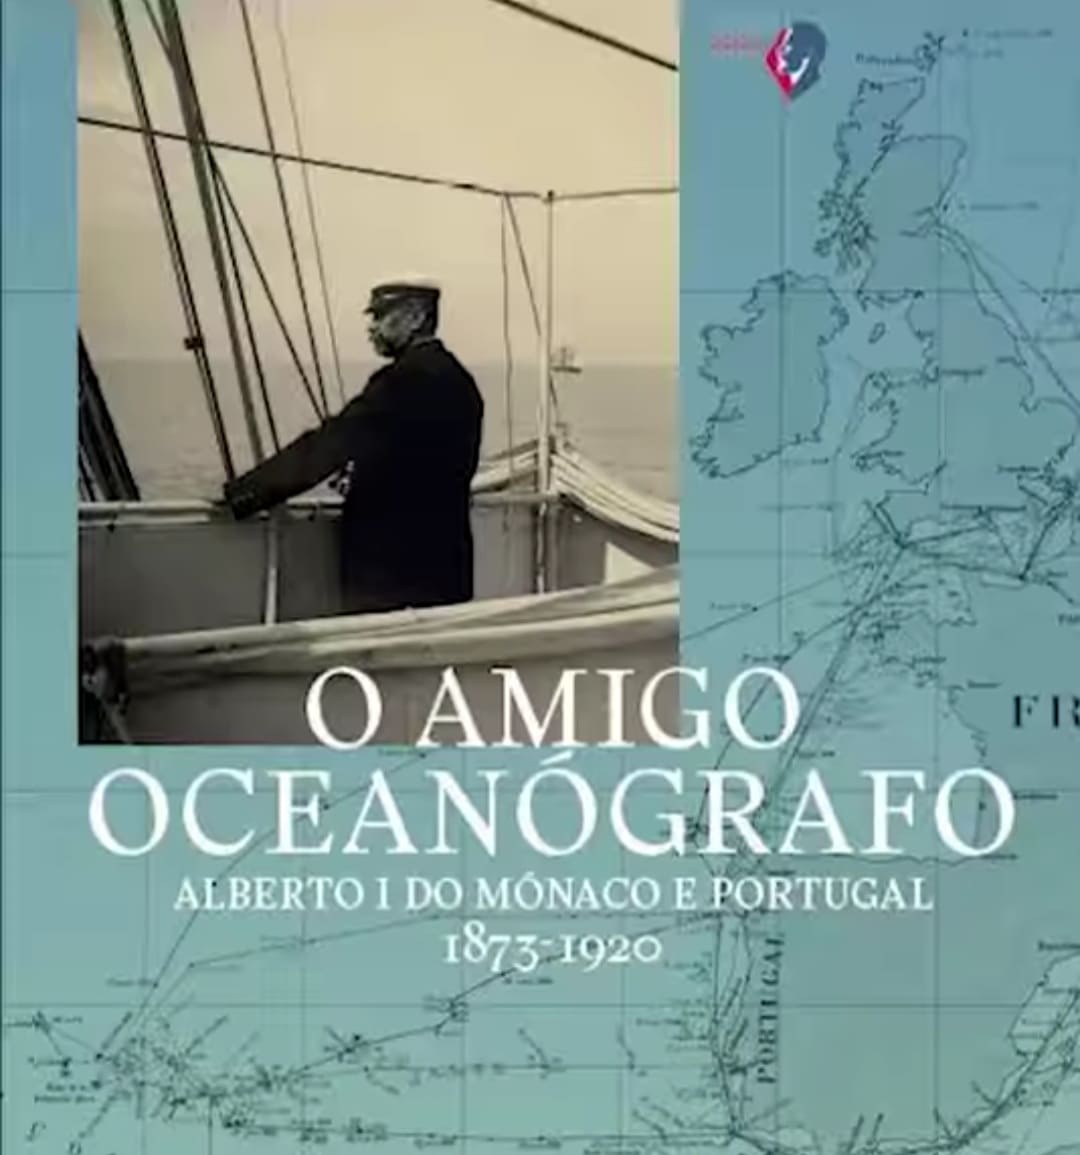 Научные экспедиции основателя музея Океанографии, князя Альбера I